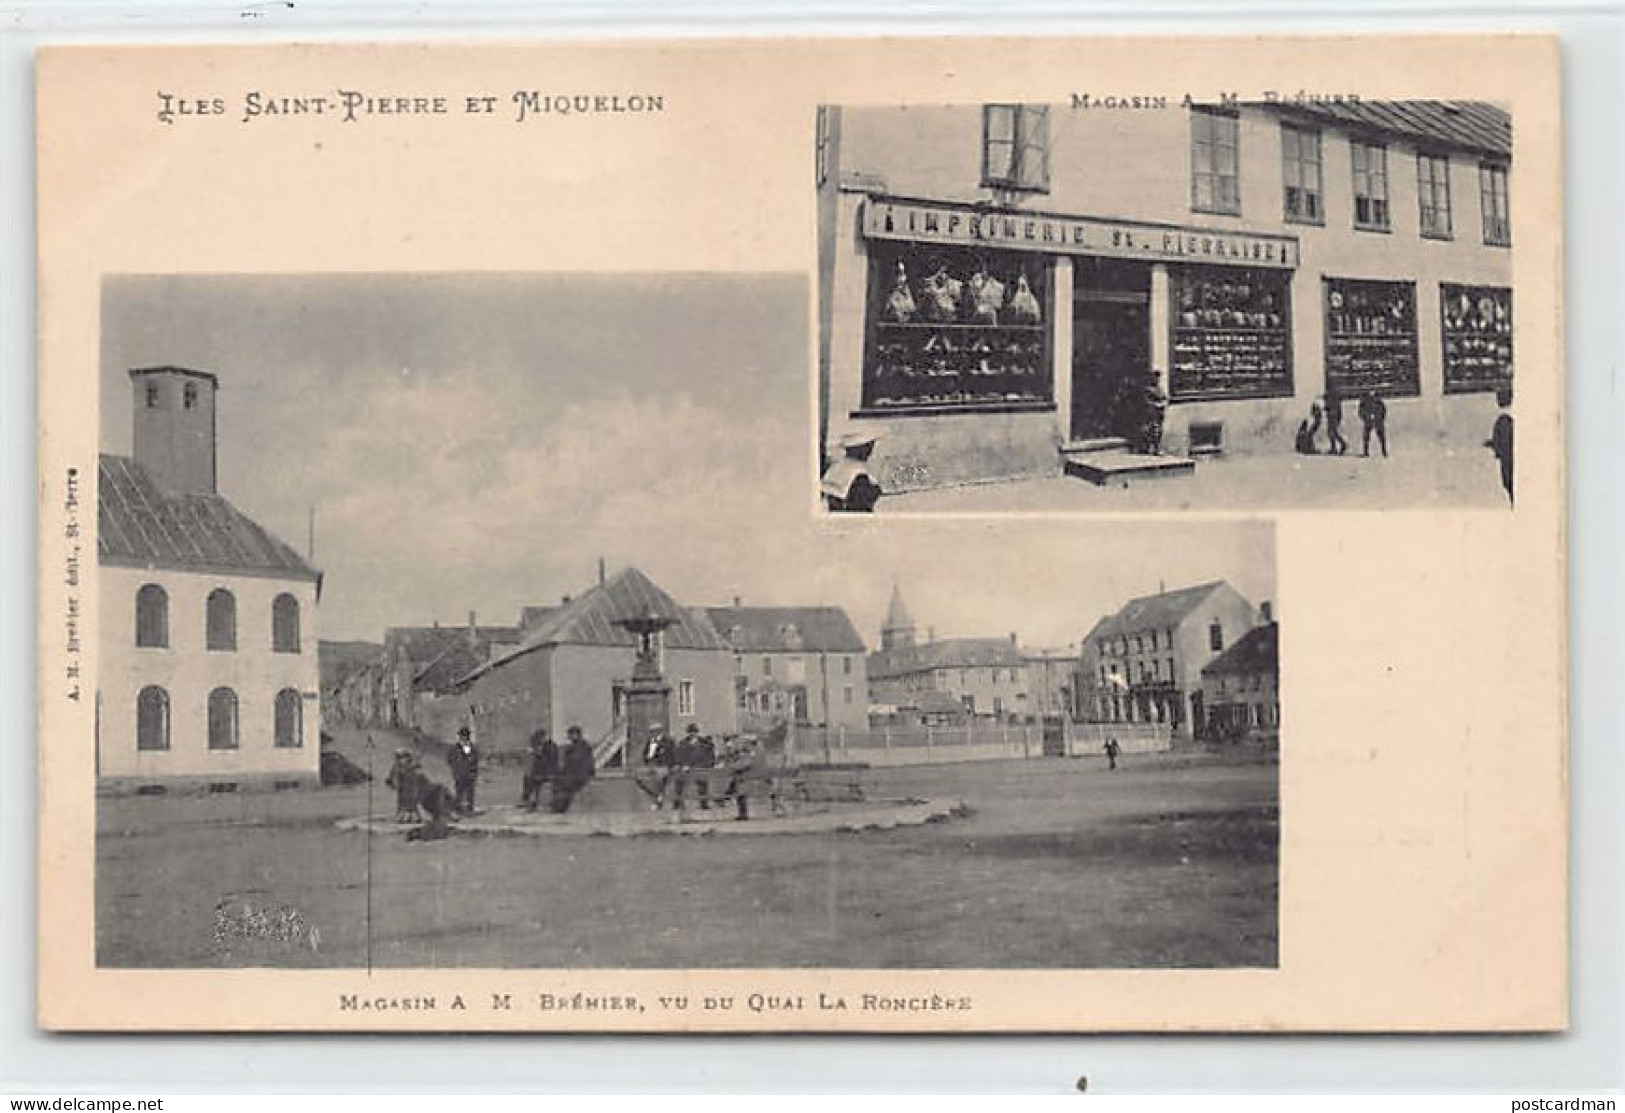 SAINT-PIERRE - Magasin A. M. Brehier, Vu Du Quai De La Roncière - CARTE PUBLICITAIRE - Ed. A. M. Bréhier  - San Pedro Y Miquelón